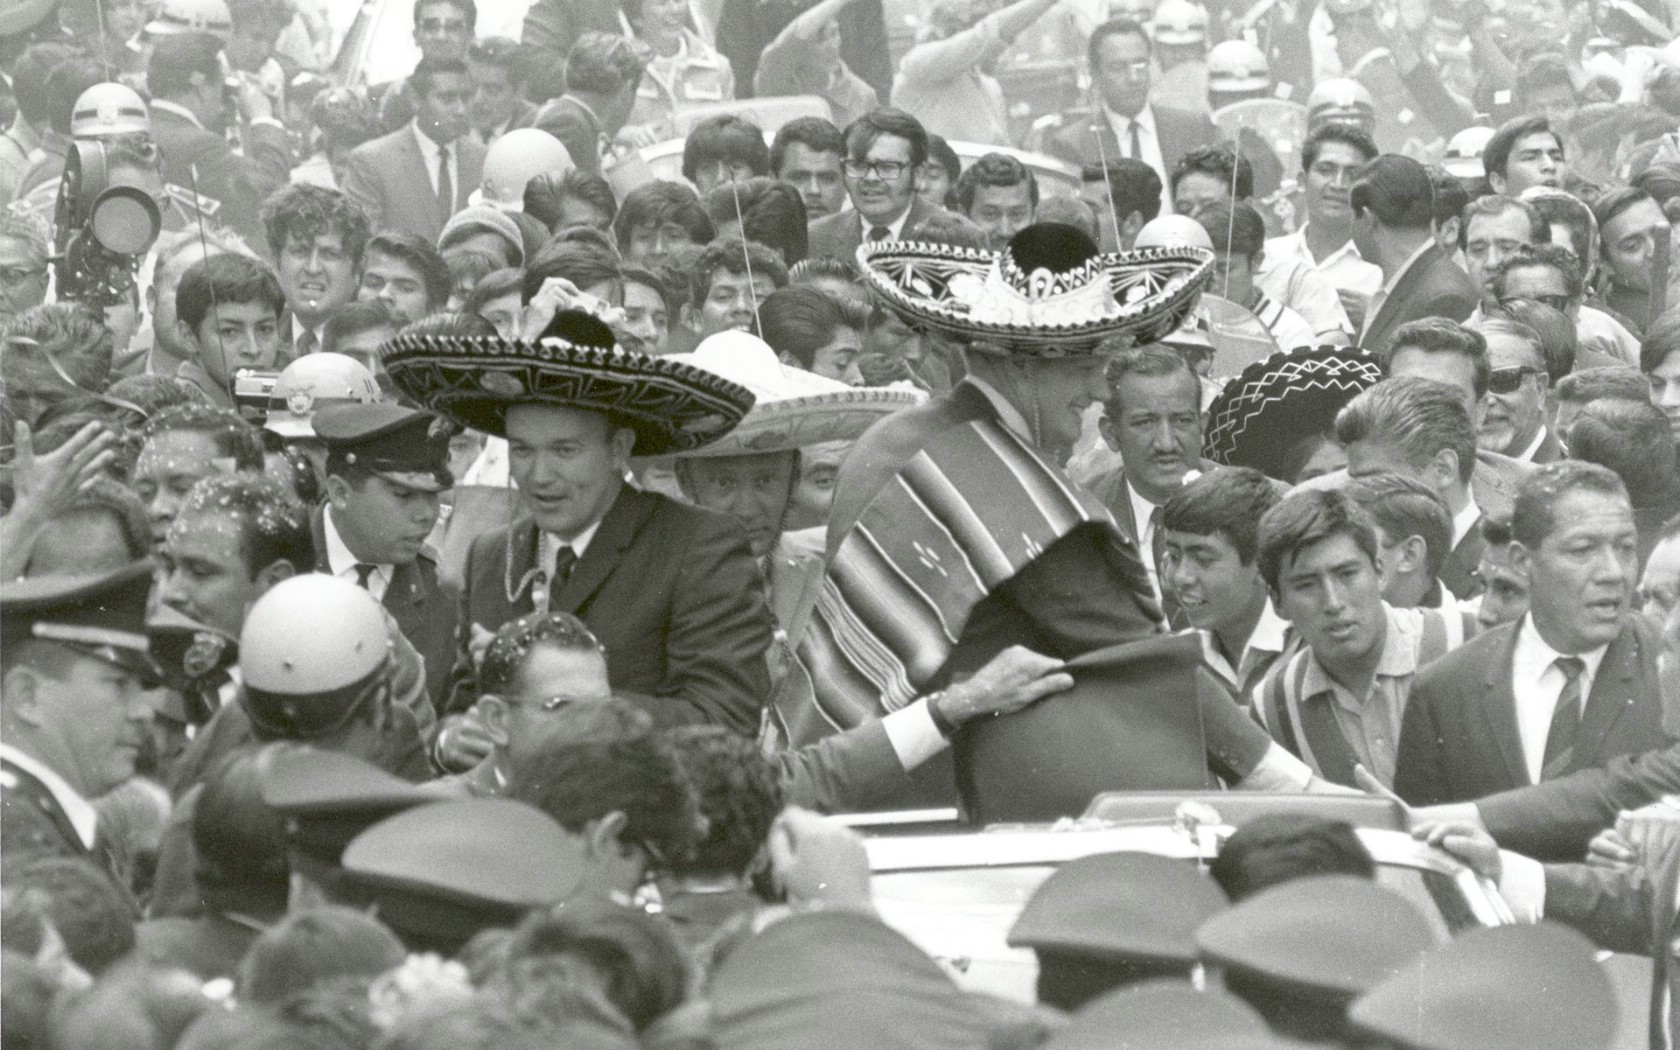 壁纸1680x1050One Giant Leap for Mankind  Apollo 11 Astronauts Swarmed by Thousands In Mexico City Parade 墨西哥城的庆祝游行壁纸 阿波罗11号登月40周年纪念壁纸壁纸 阿波罗11号登月40周年纪念壁纸图片 阿波罗11号登月40周年纪念壁纸素材 人文壁纸 人文图库 人文图片素材桌面壁纸